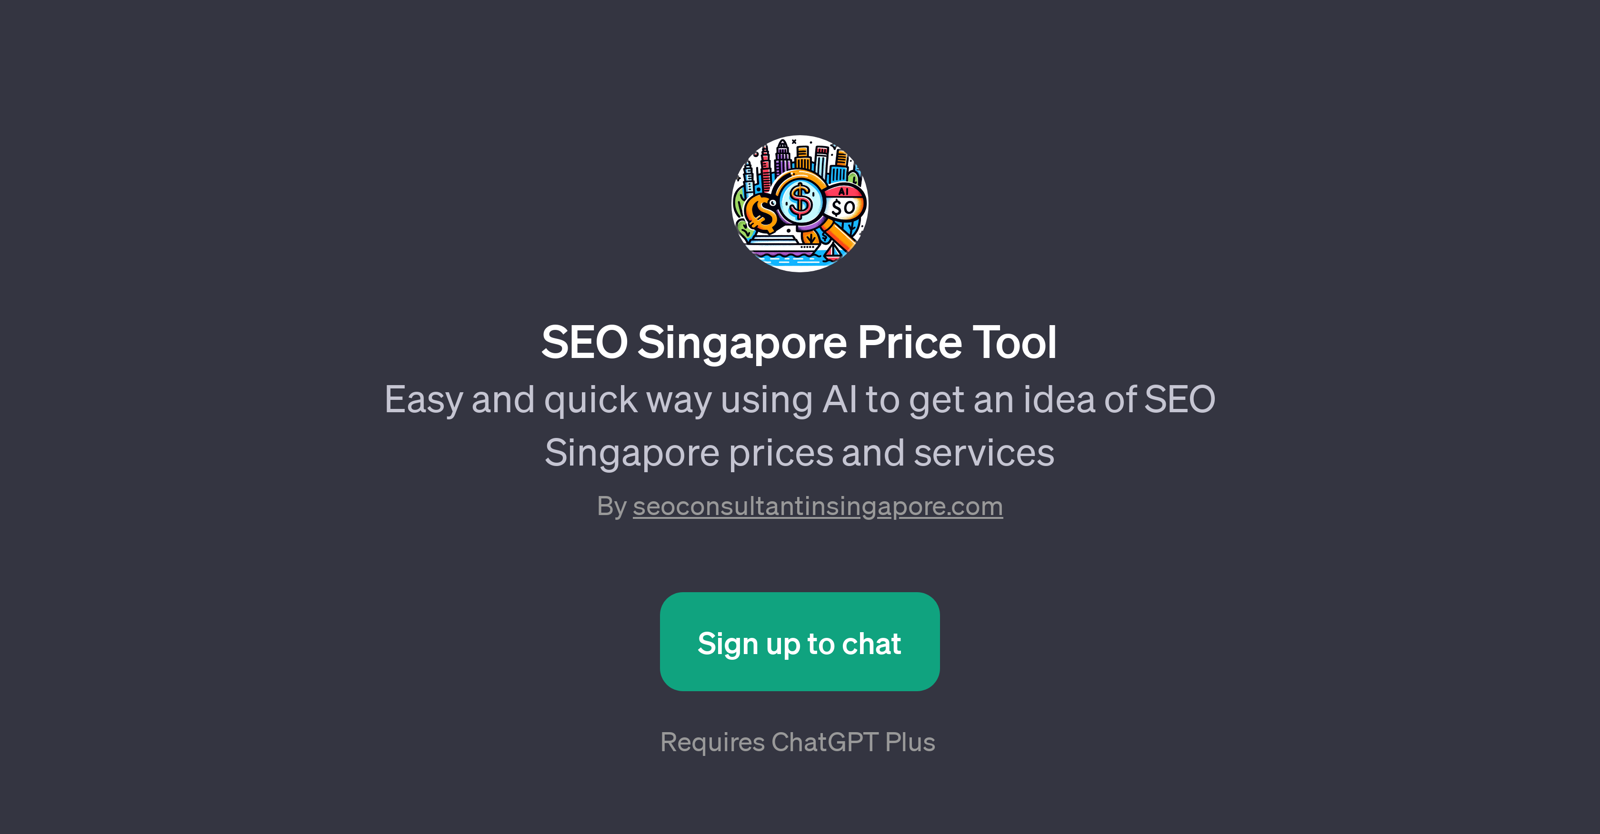 SEO Singapore Price Tool website